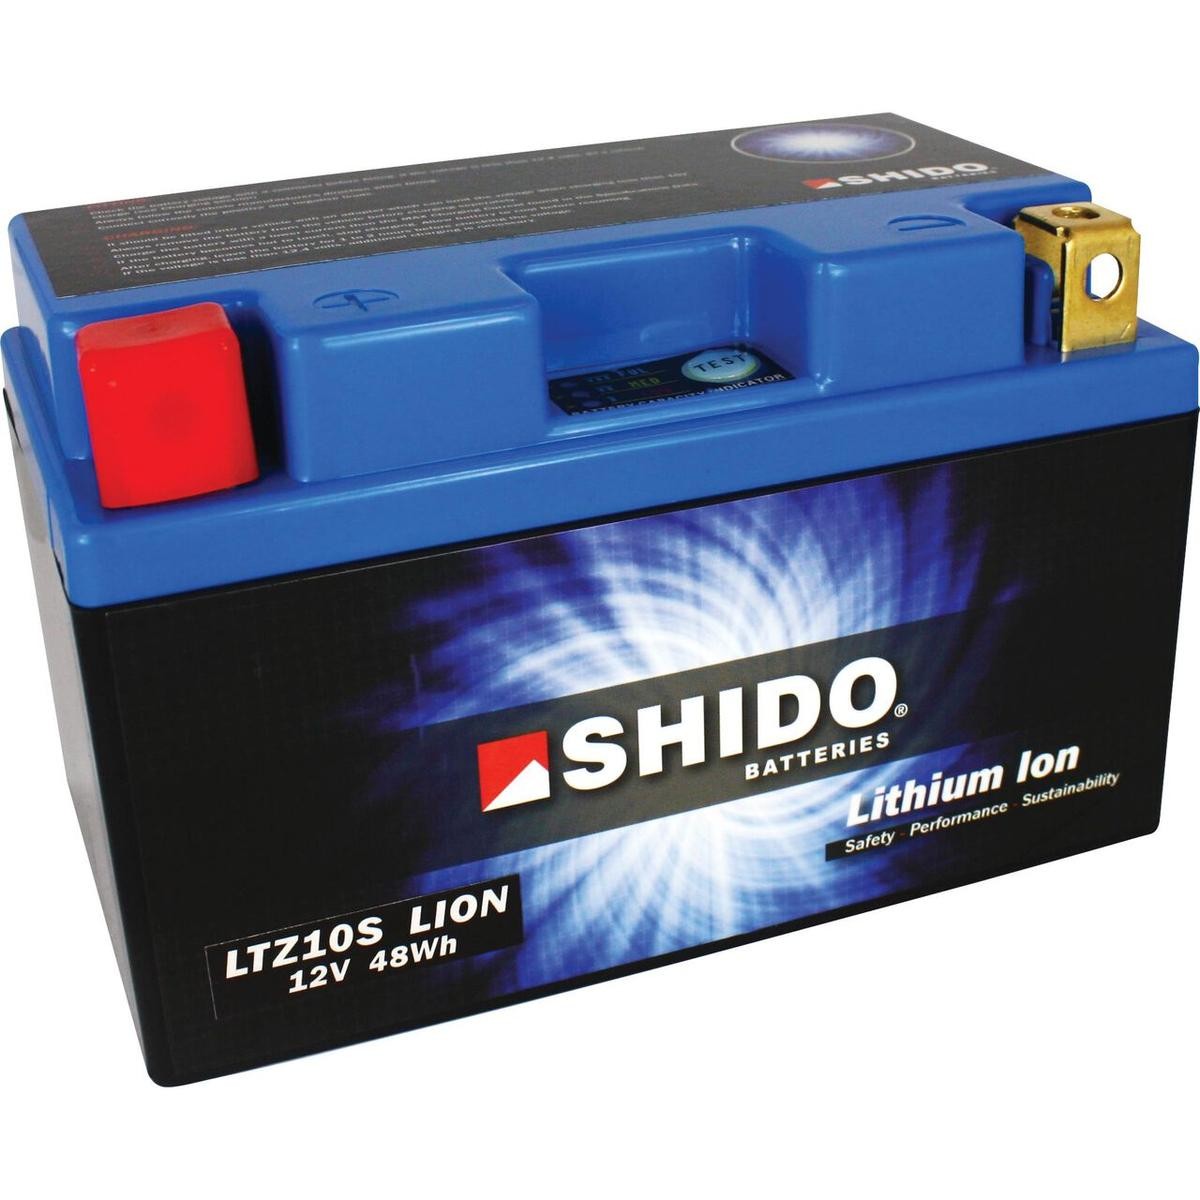 HONDA NSS Batterie 12V 4Ah 240A strap mit Ladezustandsanzeige, Kippwinkel bis 180°, Li-Ionen-Batterie, Lithium-Ferrum-Batterie (LiFePO4), Pluspol links Shido LTZ10SLION-S-